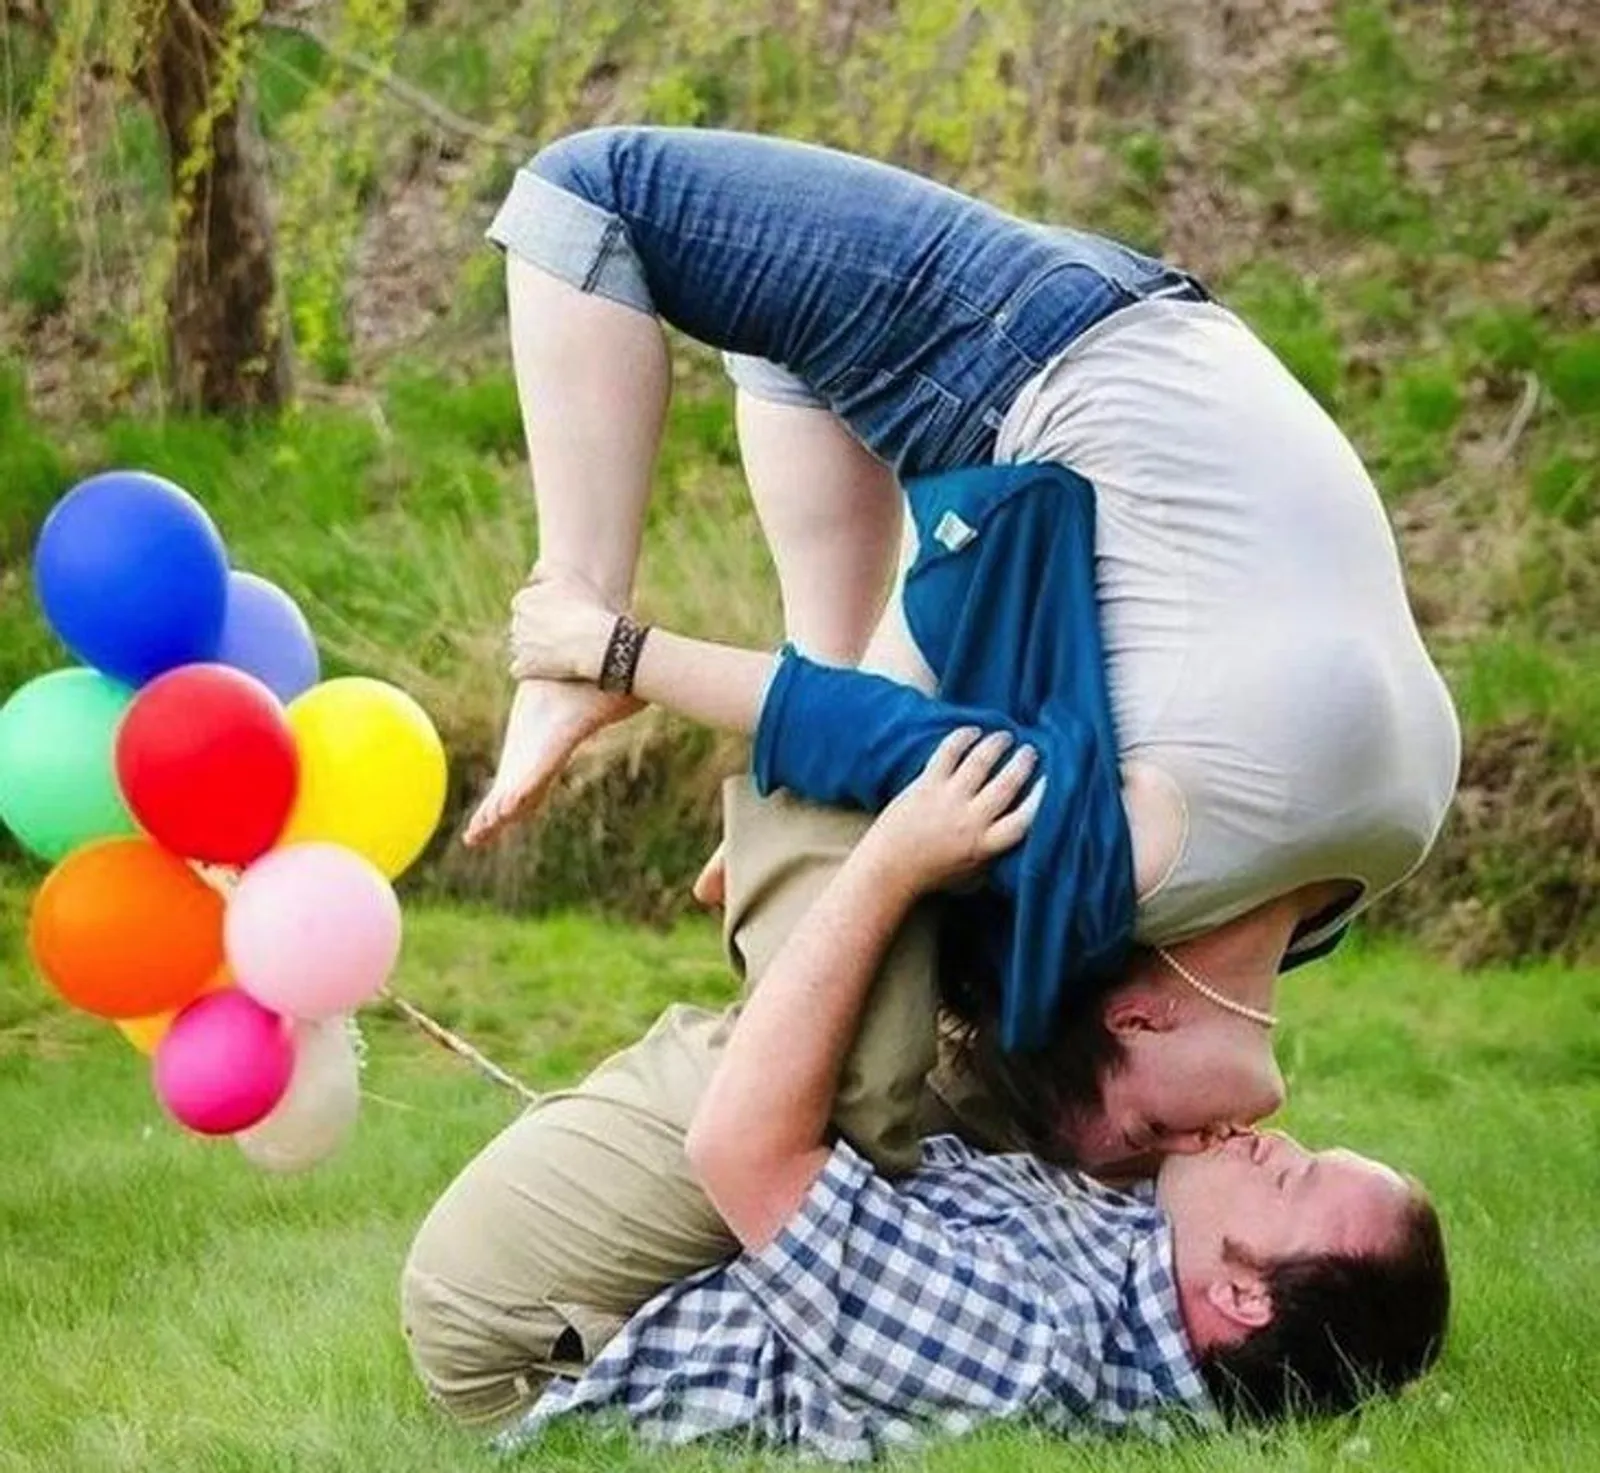 Bukannya Romantis, 15 Foto Pasangan Ini Sukses Bikin Gagal Paham